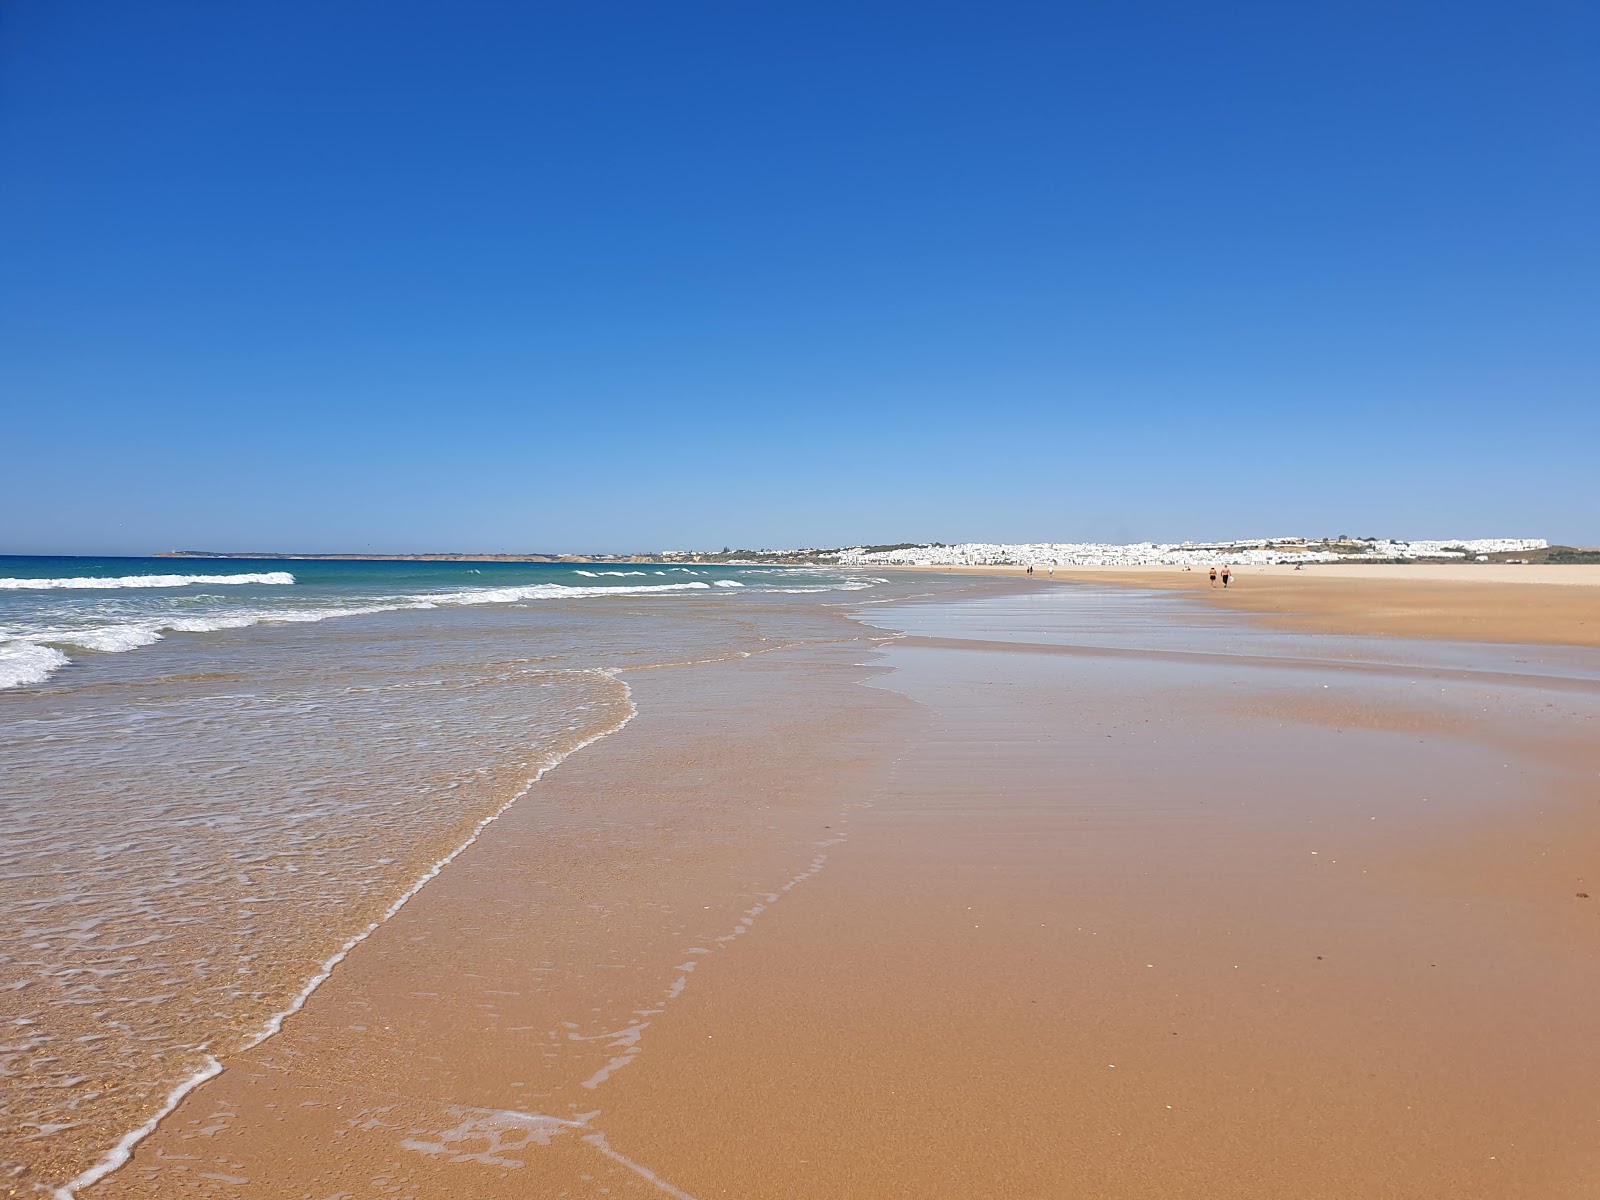 Fotografie cu Playa de Castilobo cu o suprafață de nisip strălucitor